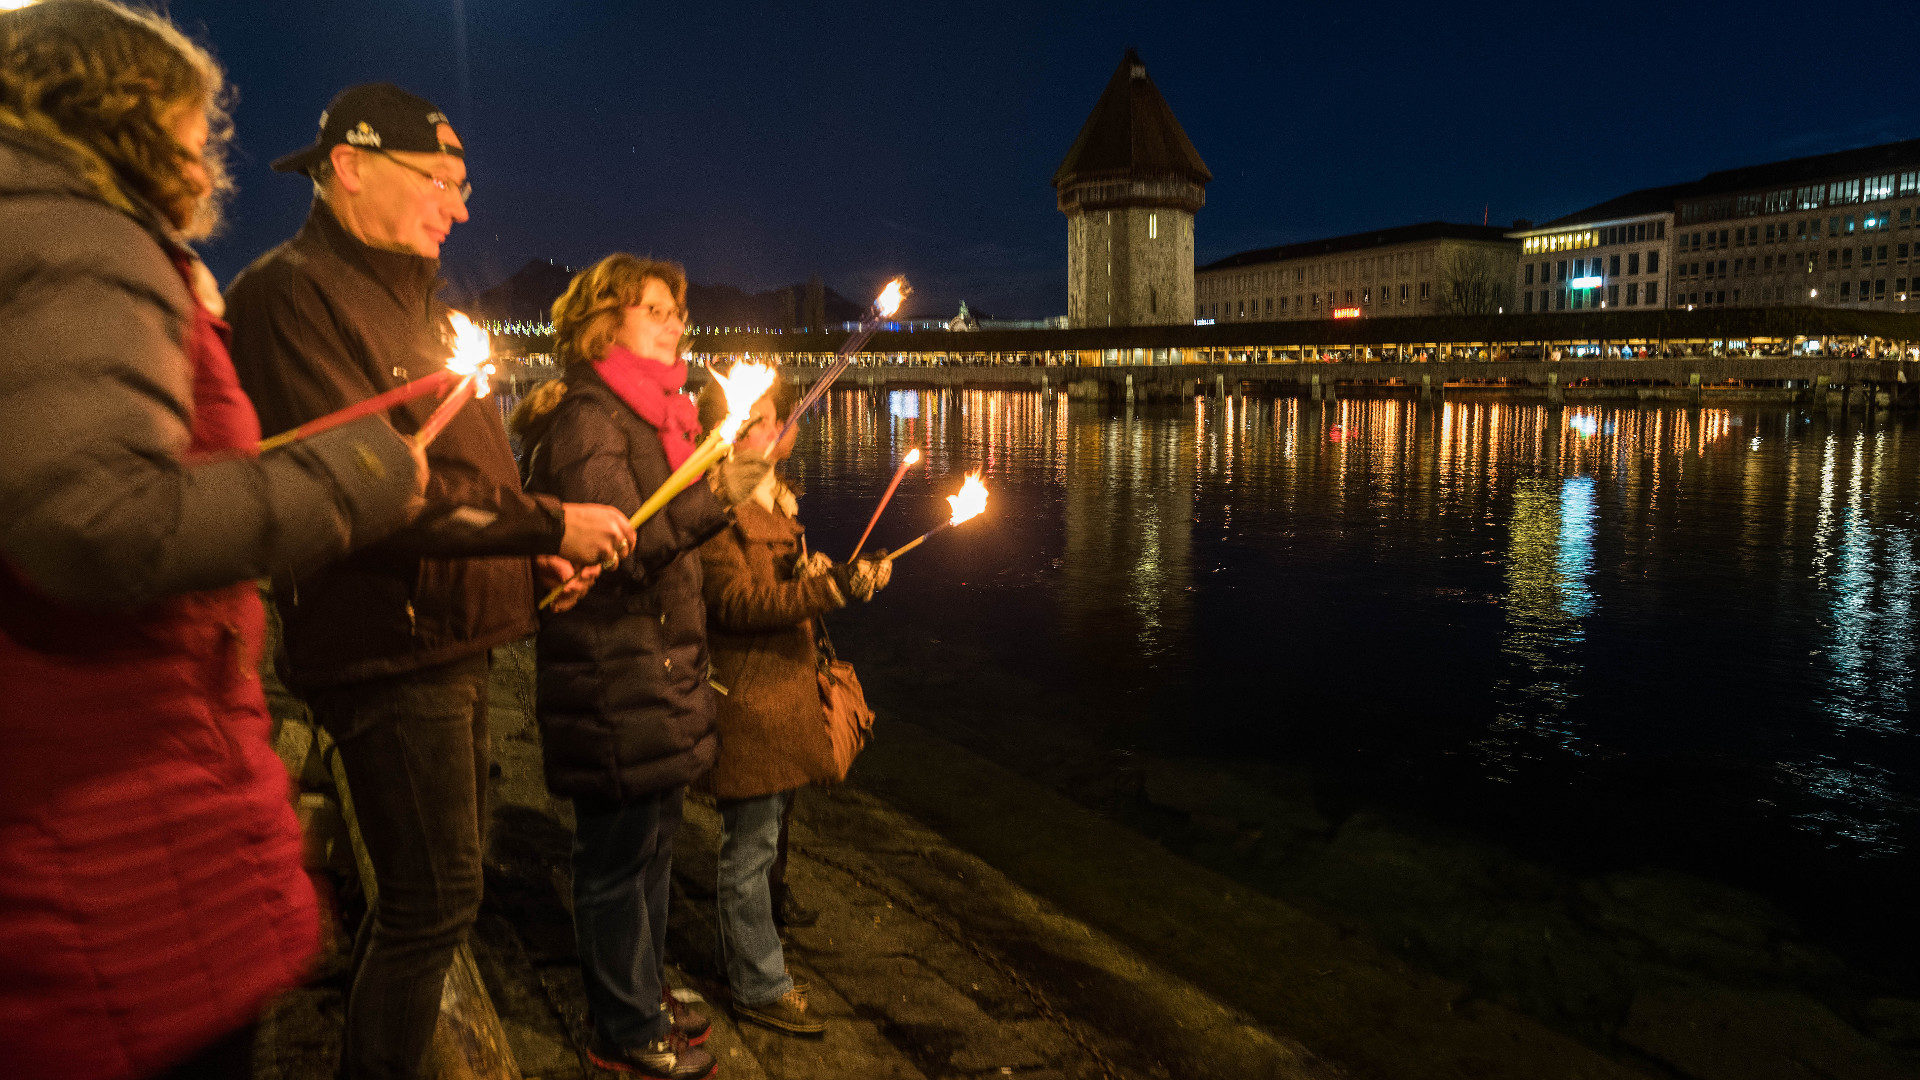 Lichterfeier der Explo 17 am Seeufer in Luzern